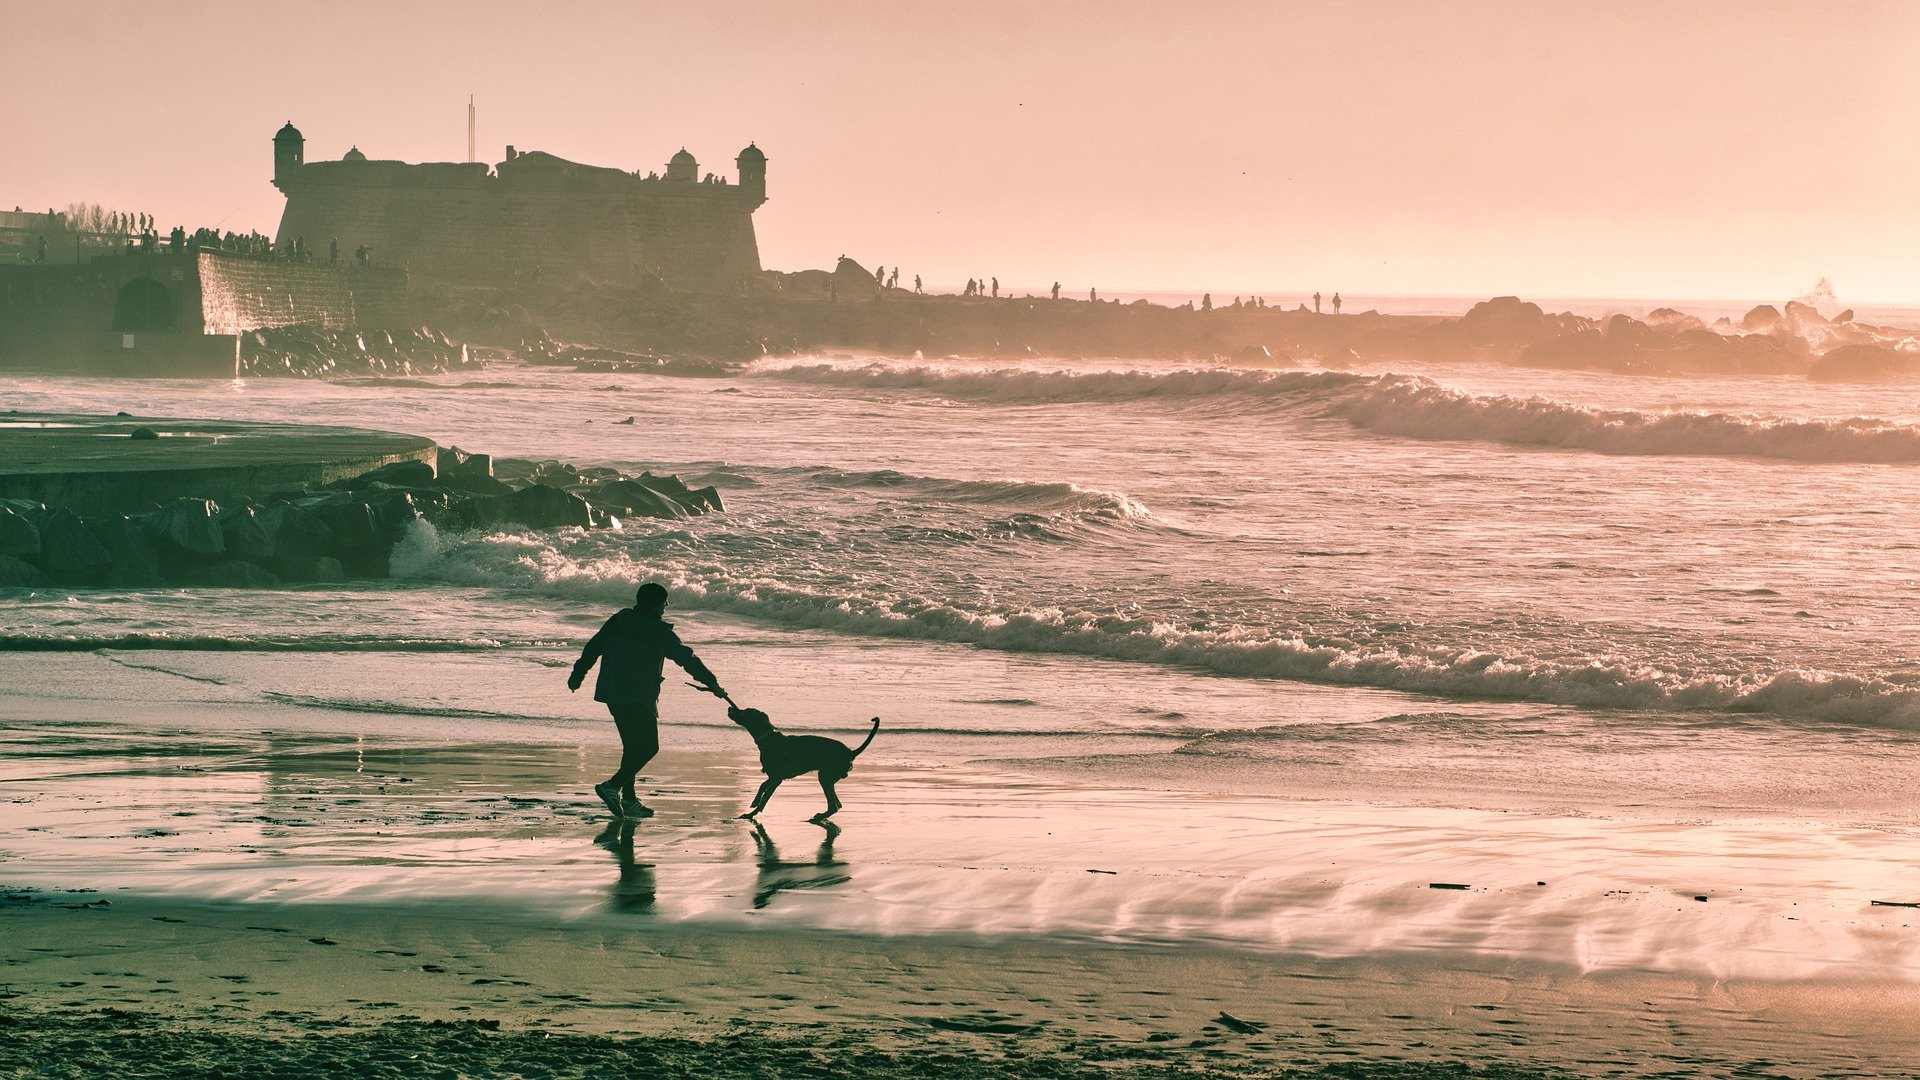 波浪翻滚的海滩 一个人，一条狗，快乐无比高清壁纸图片 <span style='color:red;'>城堡</span>前